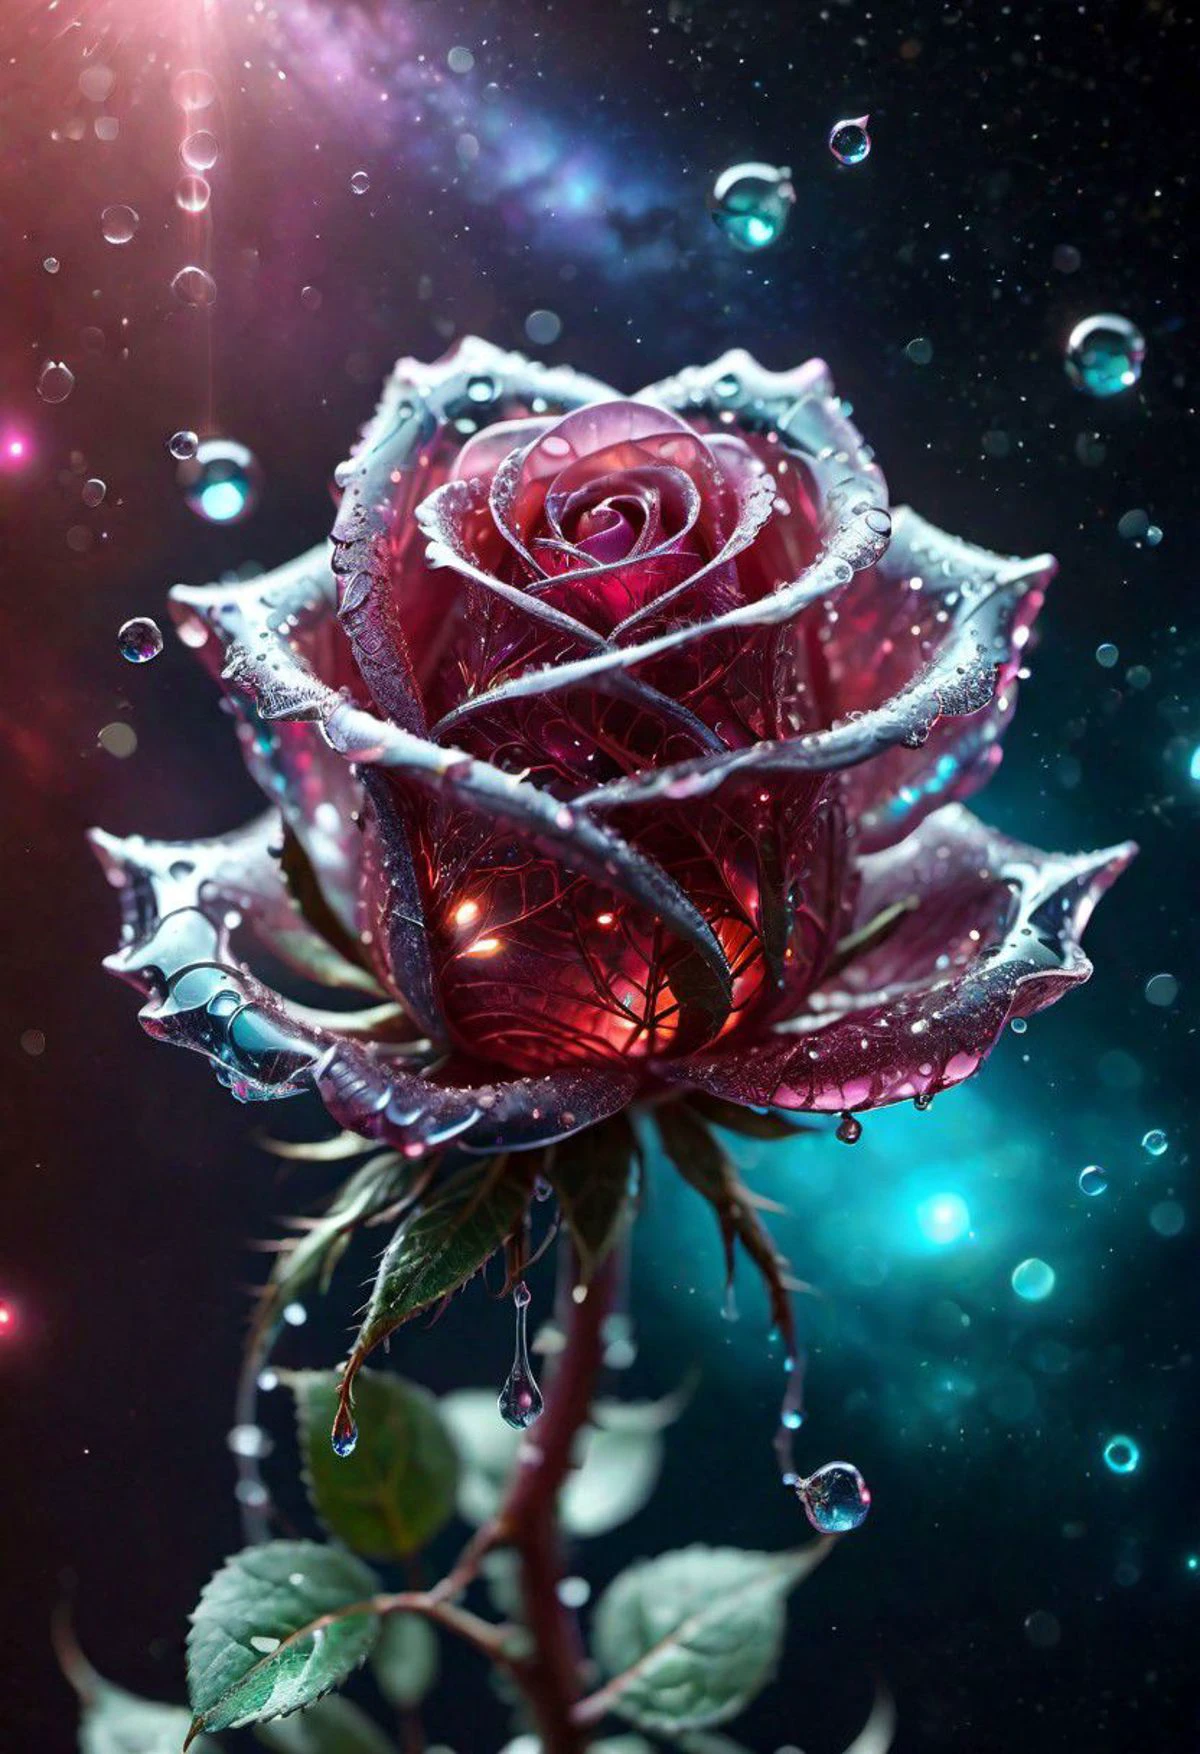 макро фото, сверкающее волшебное фэнтези стекло роза росинка, Очень подробно, потрясающее качество, сложный, кинематографический свет, очень подробно, красивый, сюрреалистический, Драматический, цвета галактики в стиле фэнтези,  